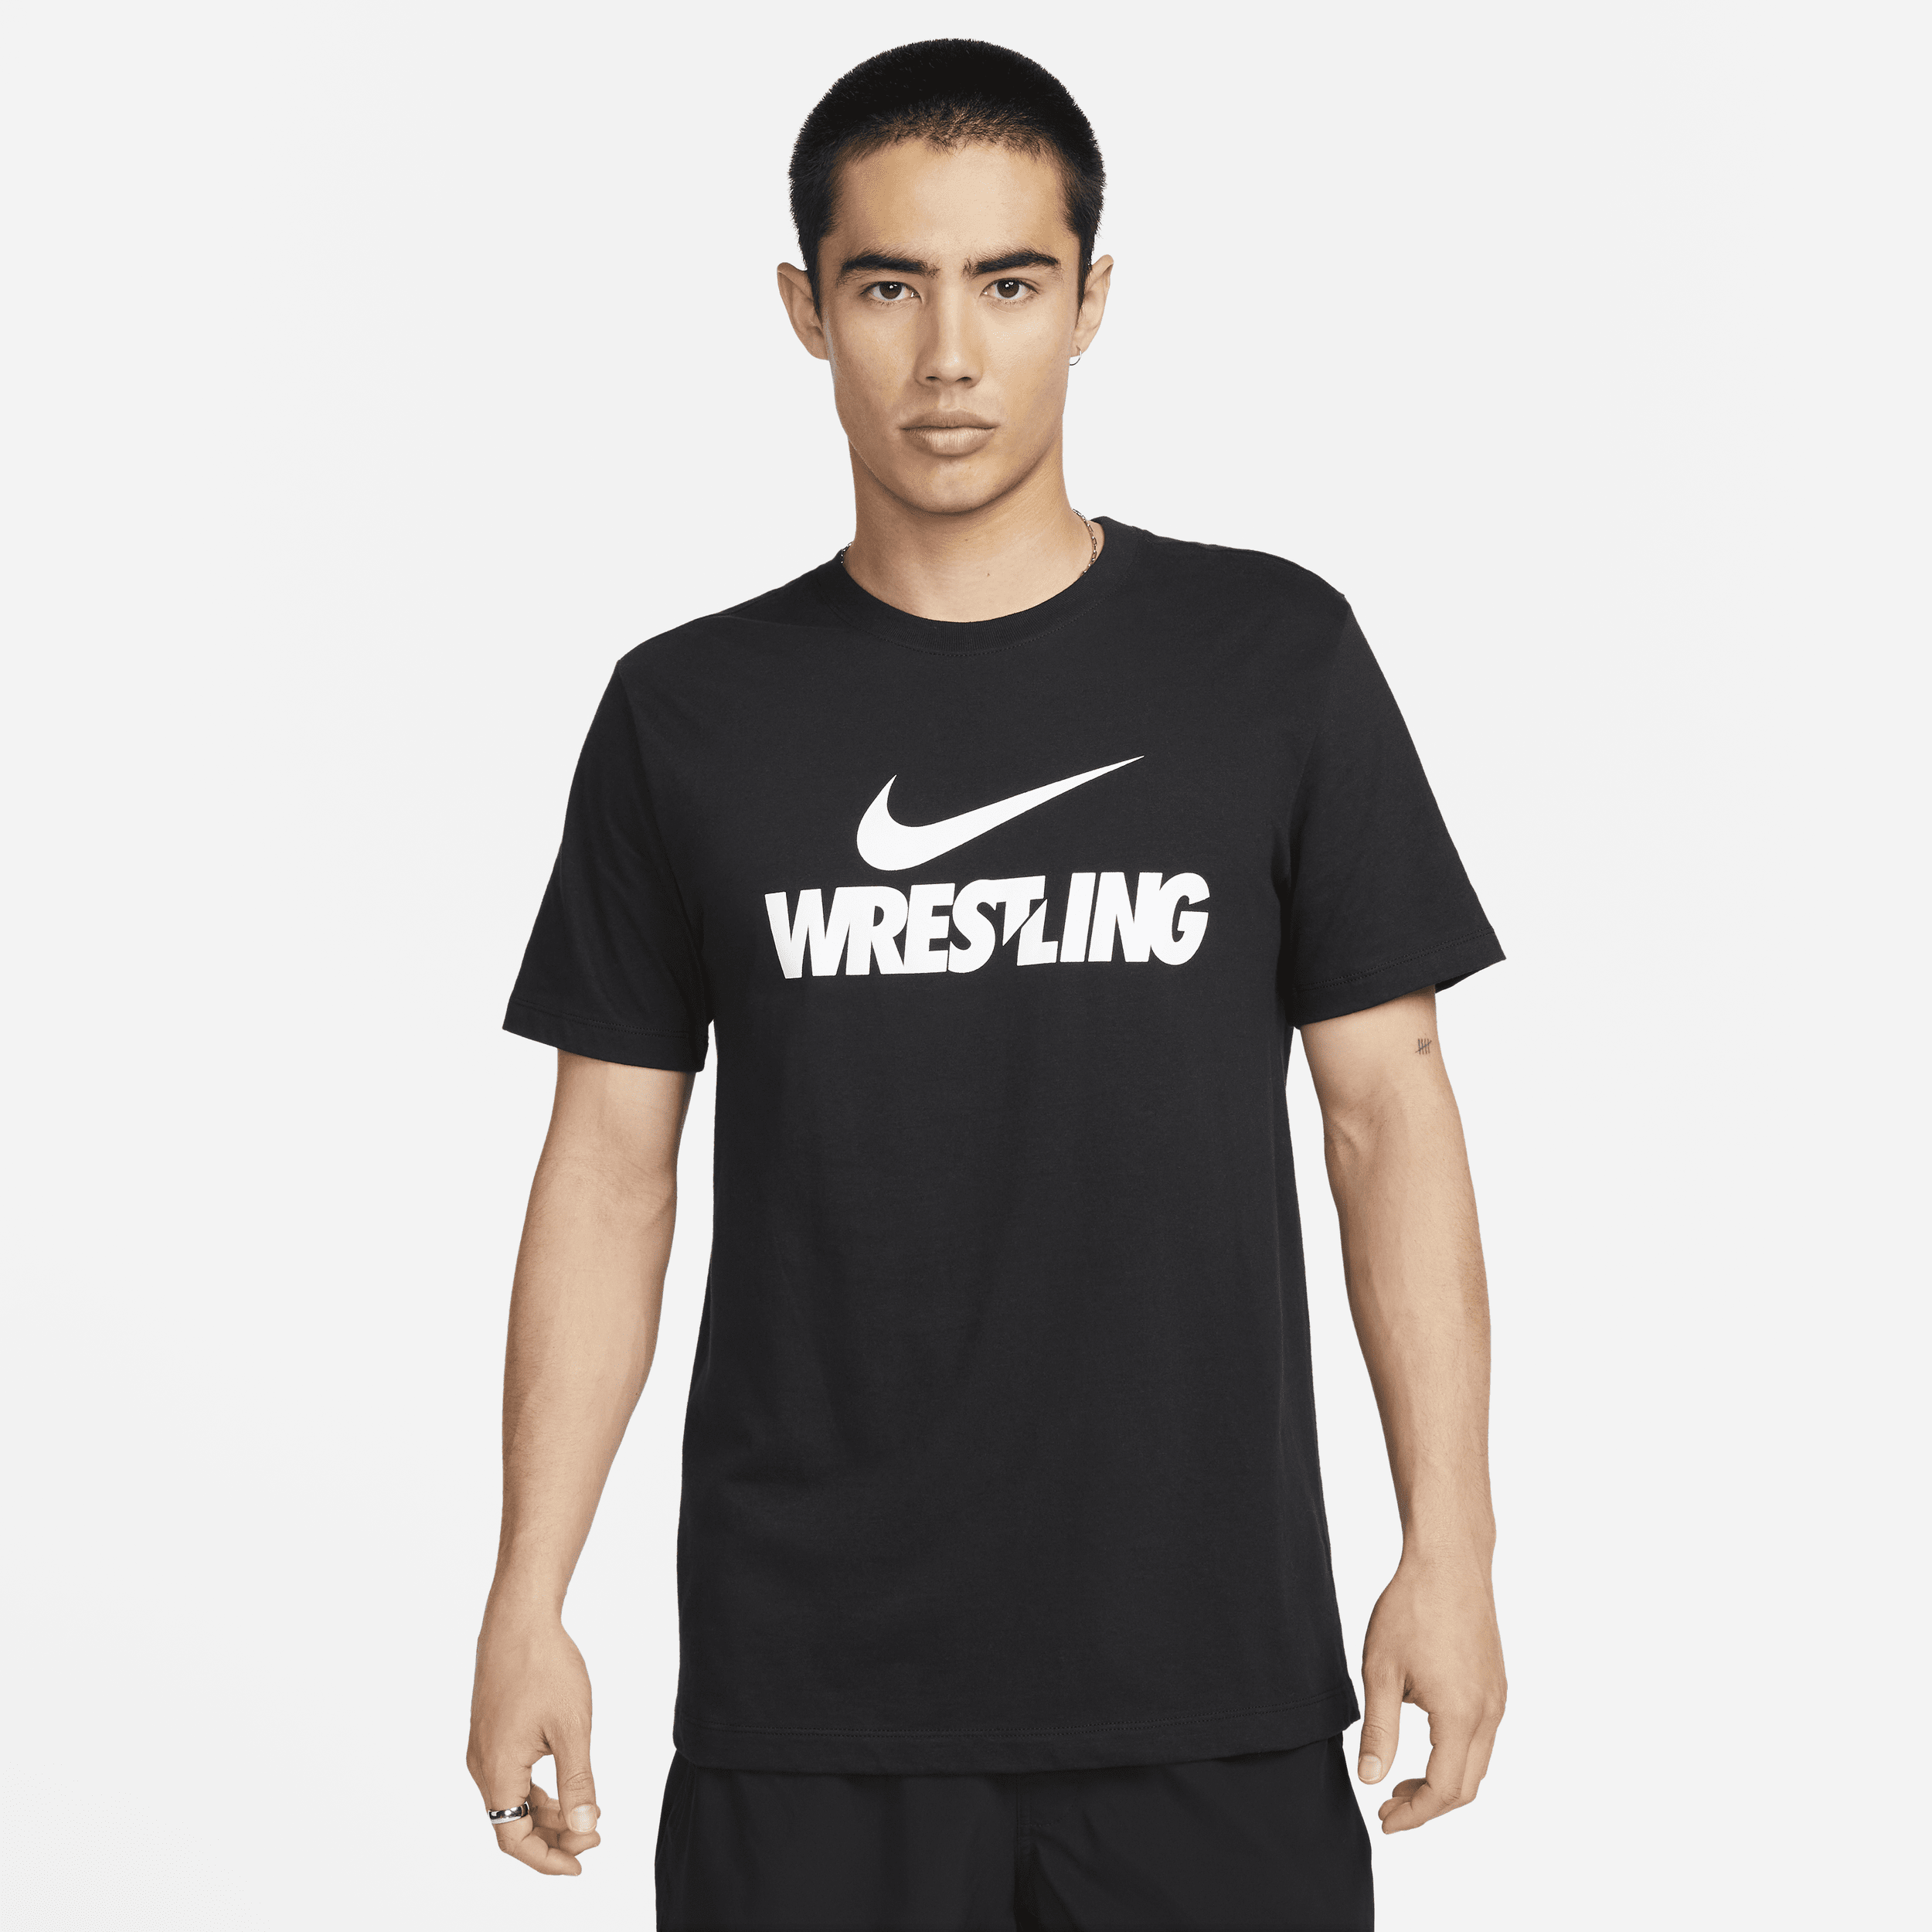 Nike Women's Wrestling T-shirt In Black